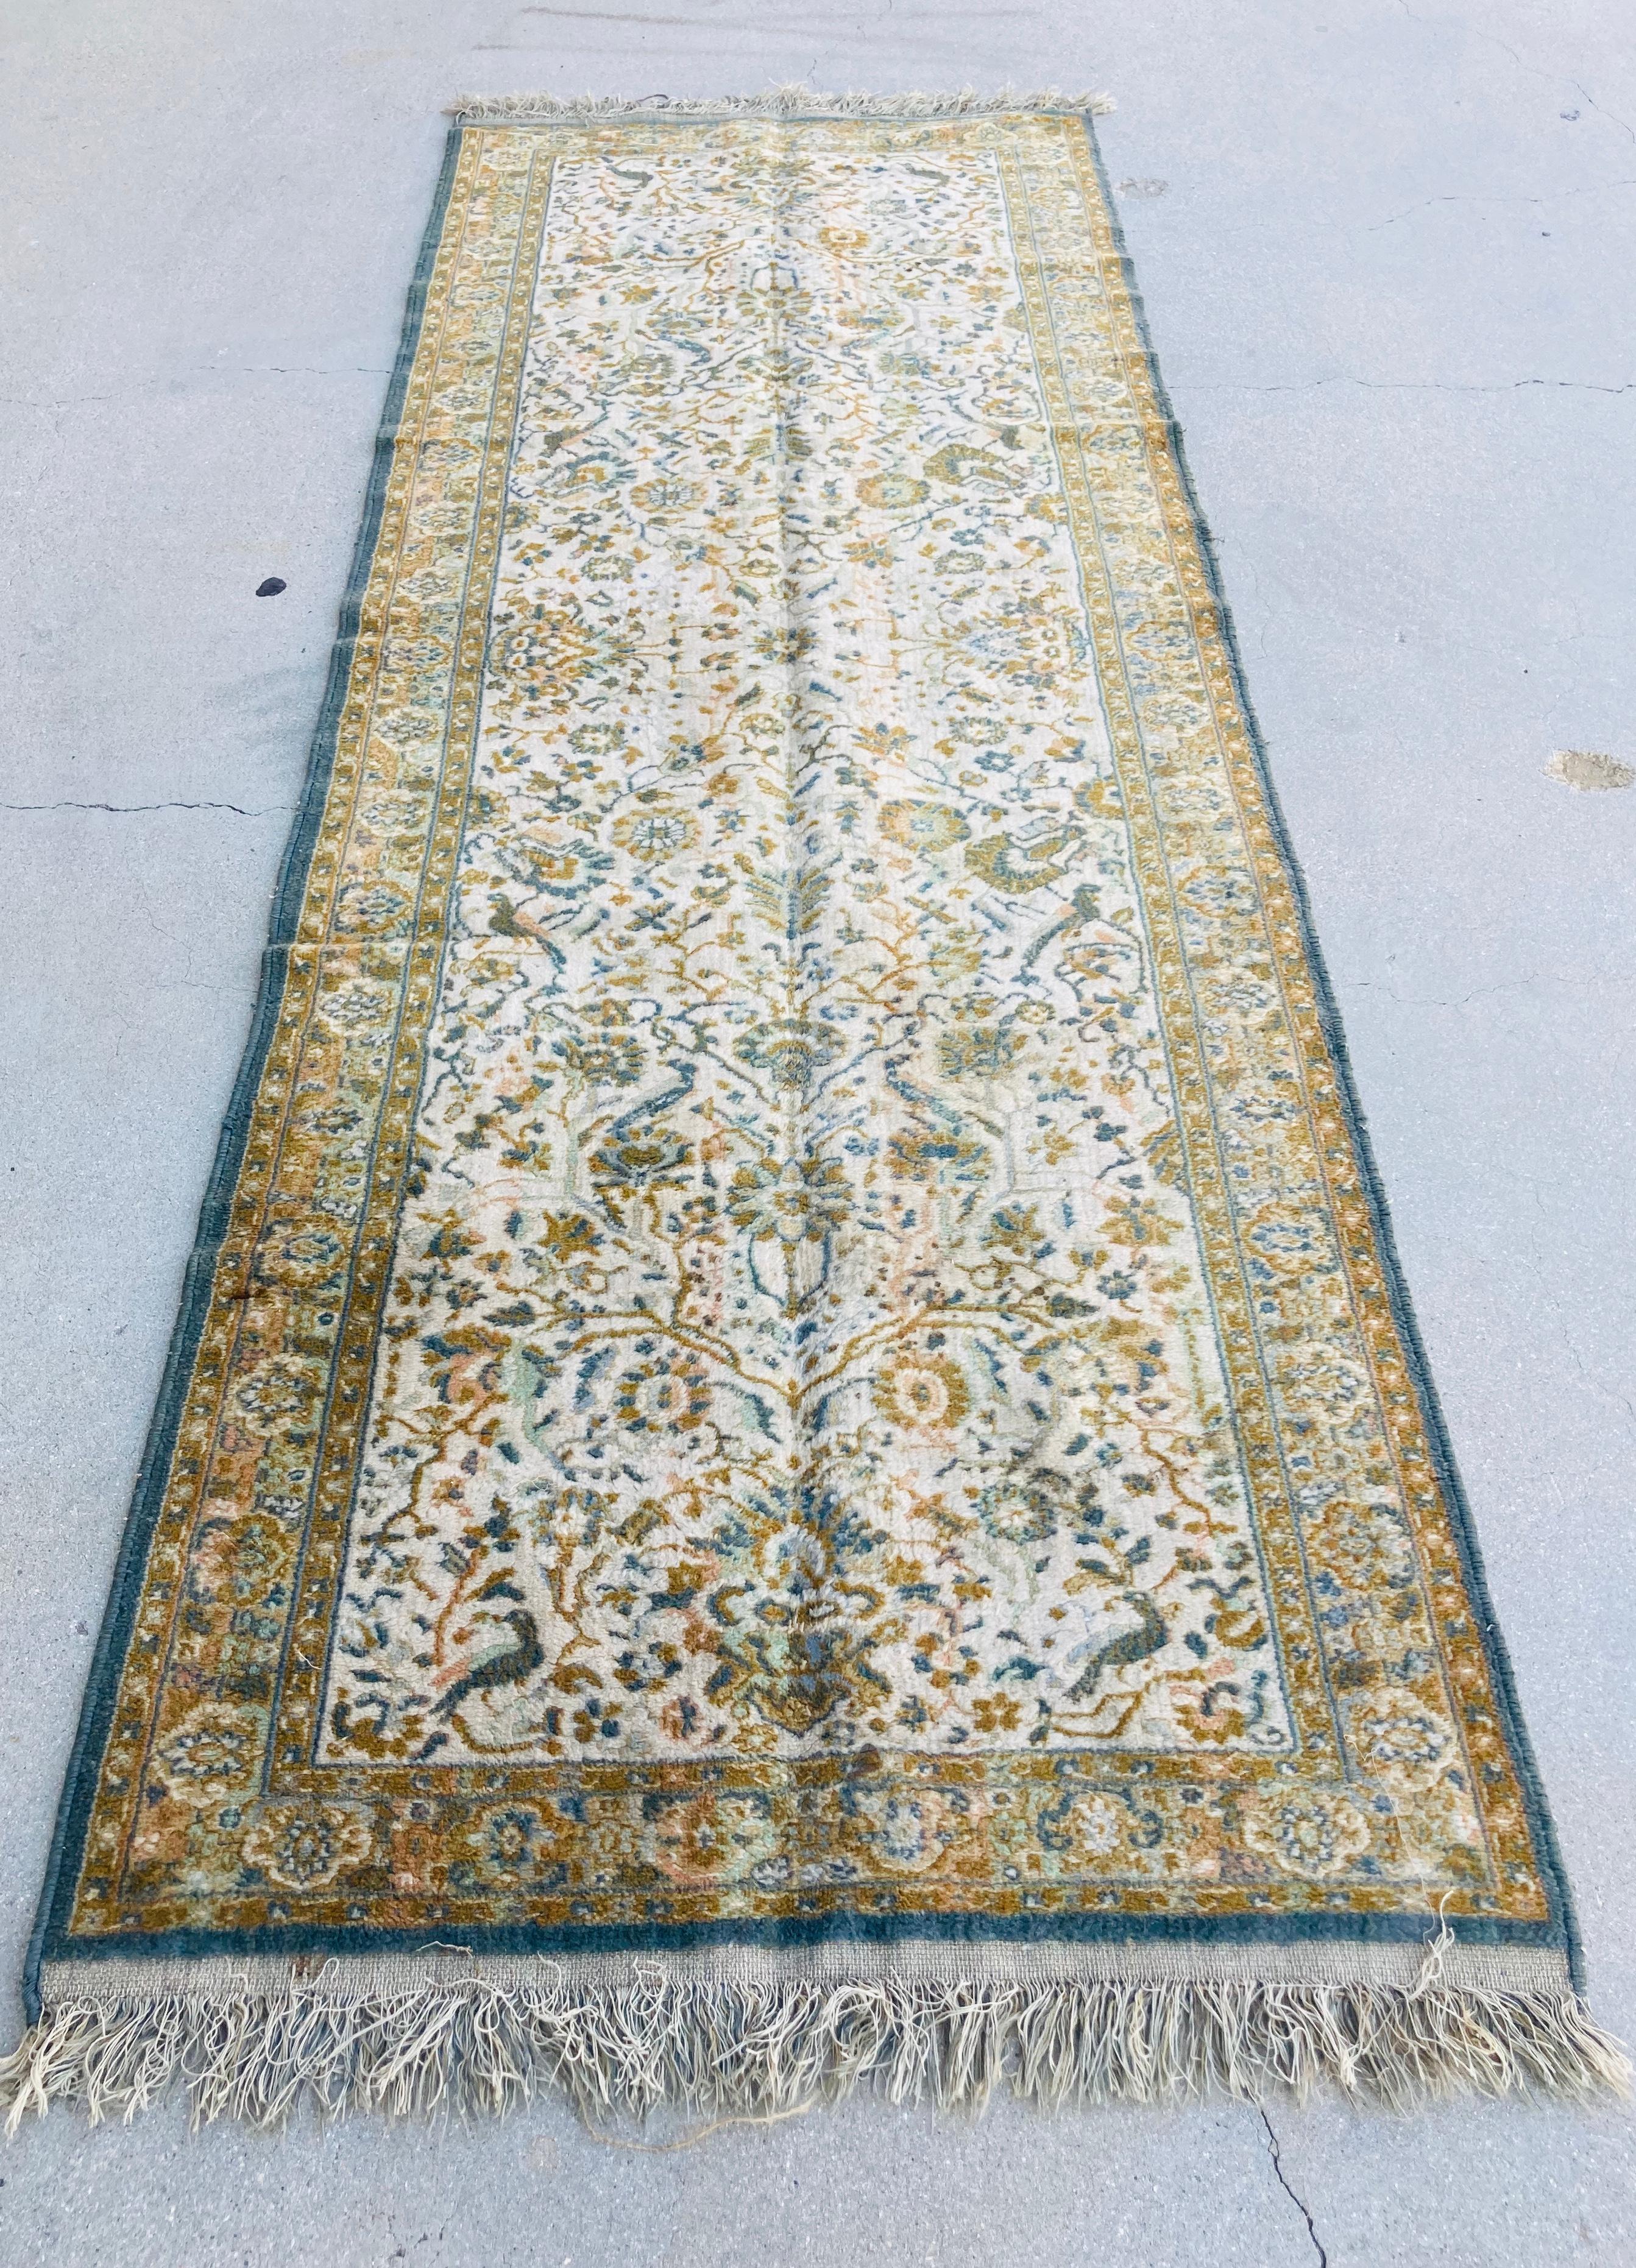 Handgeknüpfter Vintage-Teppichläufer aus der Osttürkei,
Asiatischer Teppich aus dem Nahen Osten, um 1960.
Größe: 3ft 9 in x 6ft 5in. 
Traditionelle türkische florale und geometrische Muster und Farben in ausgewaschenem Grün.